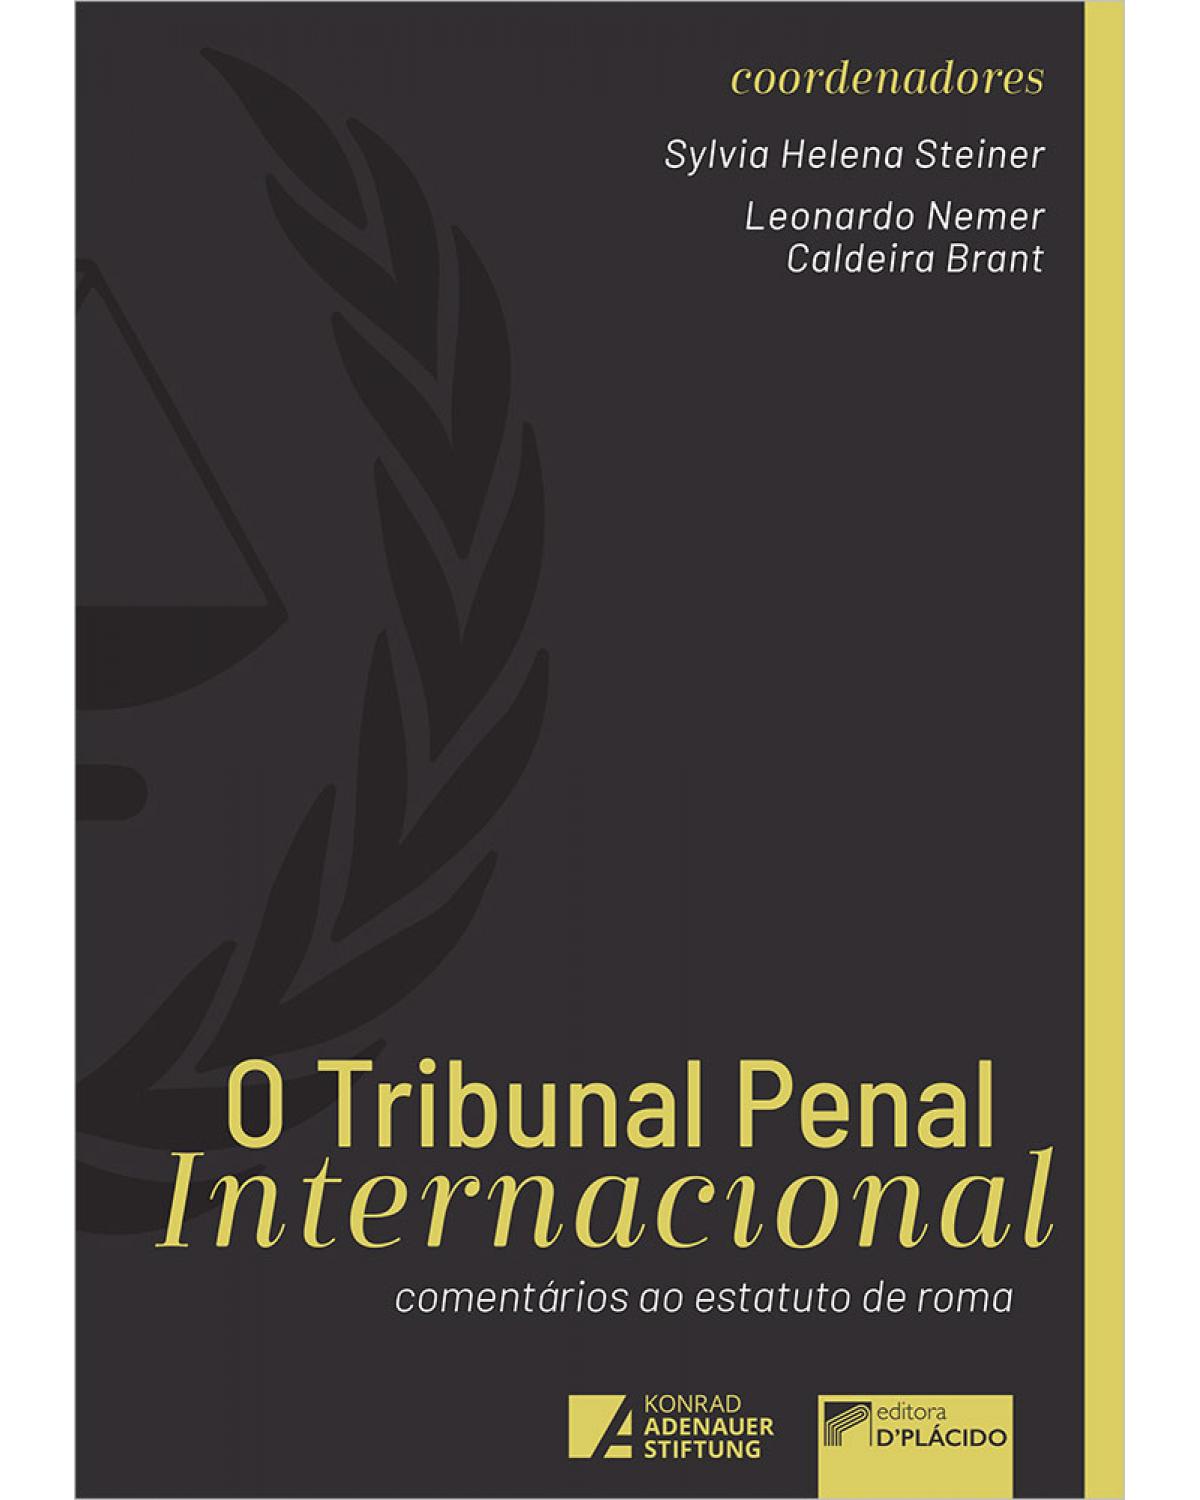 O tribunal penal internacional - comentários ao estatuto de Roma - 2ª Edição | 2020